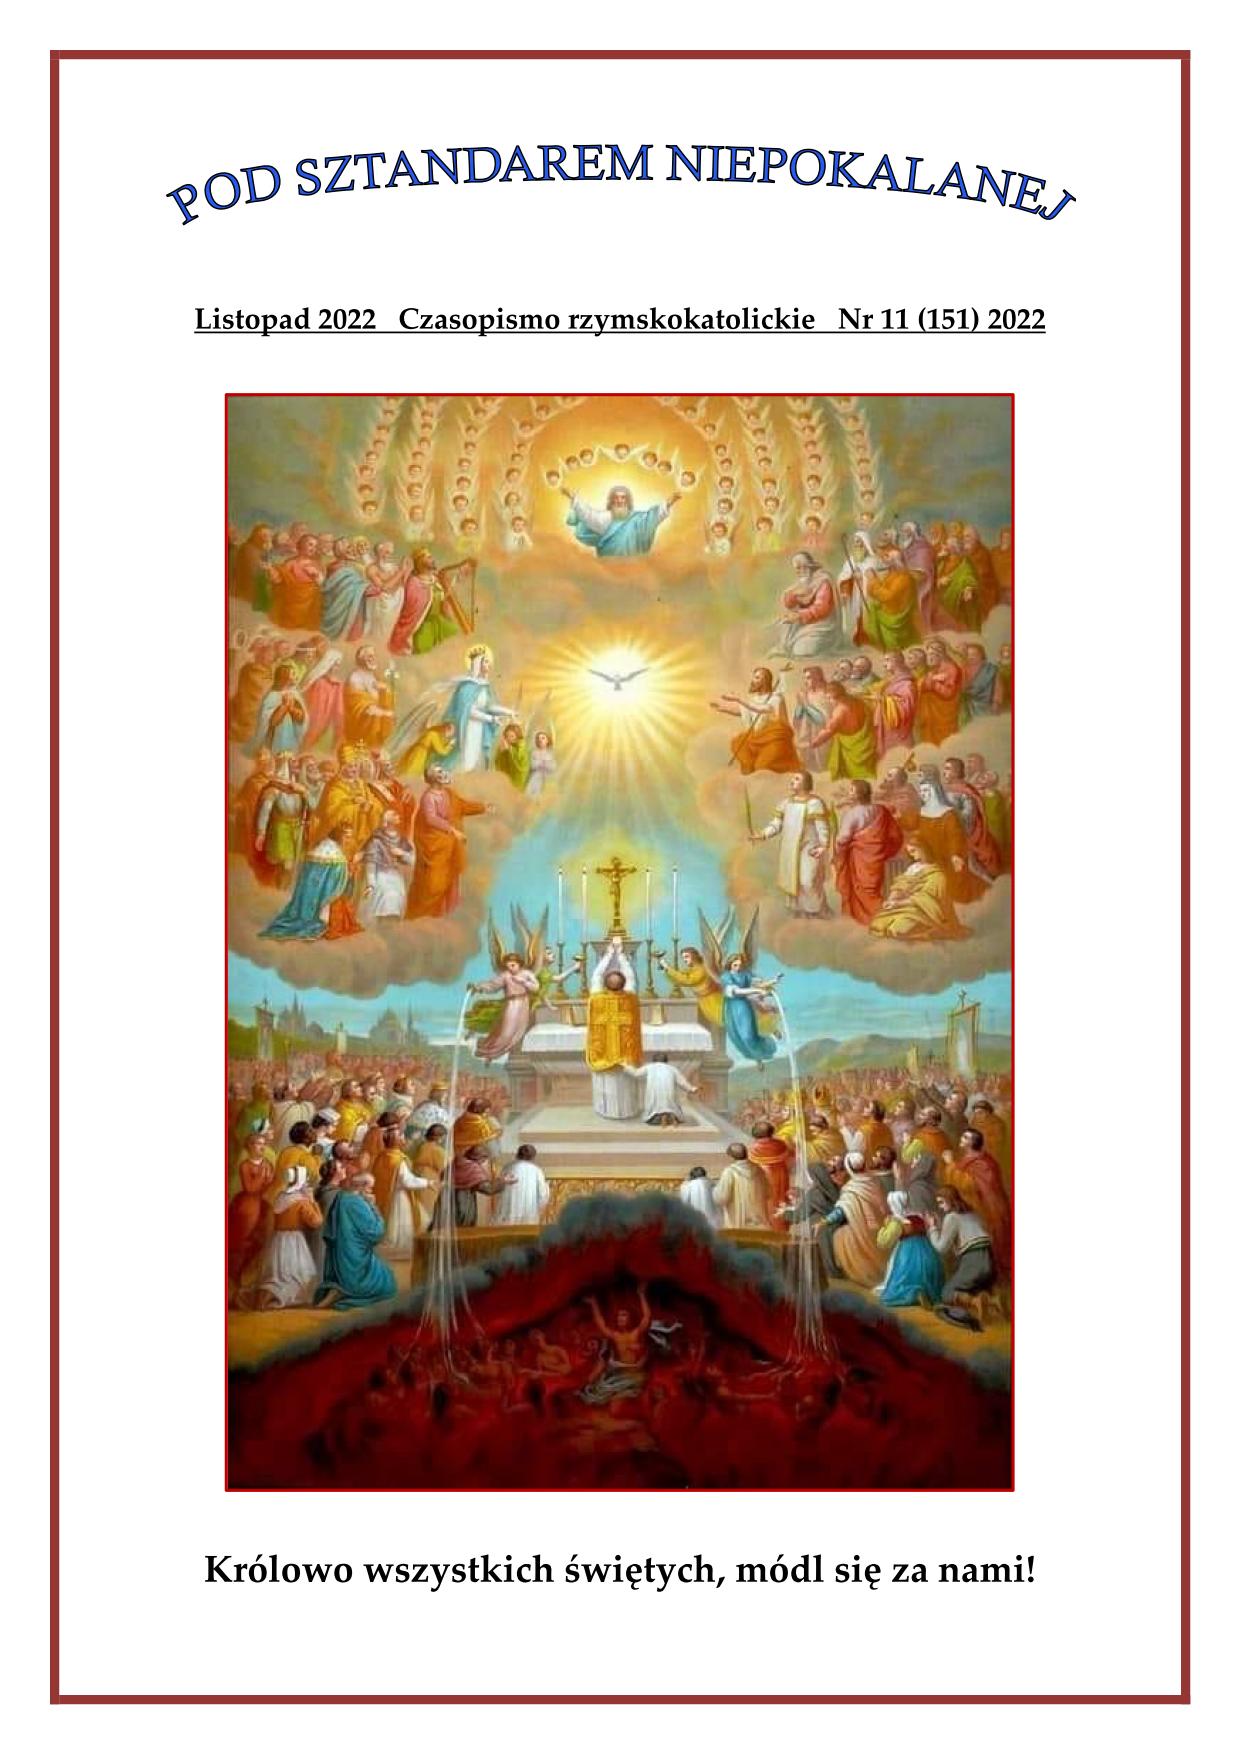 "Pod sztandarem Niepokalanej". Nr 151. Listopad 2022. Czasopismo rzymskokatolickie.